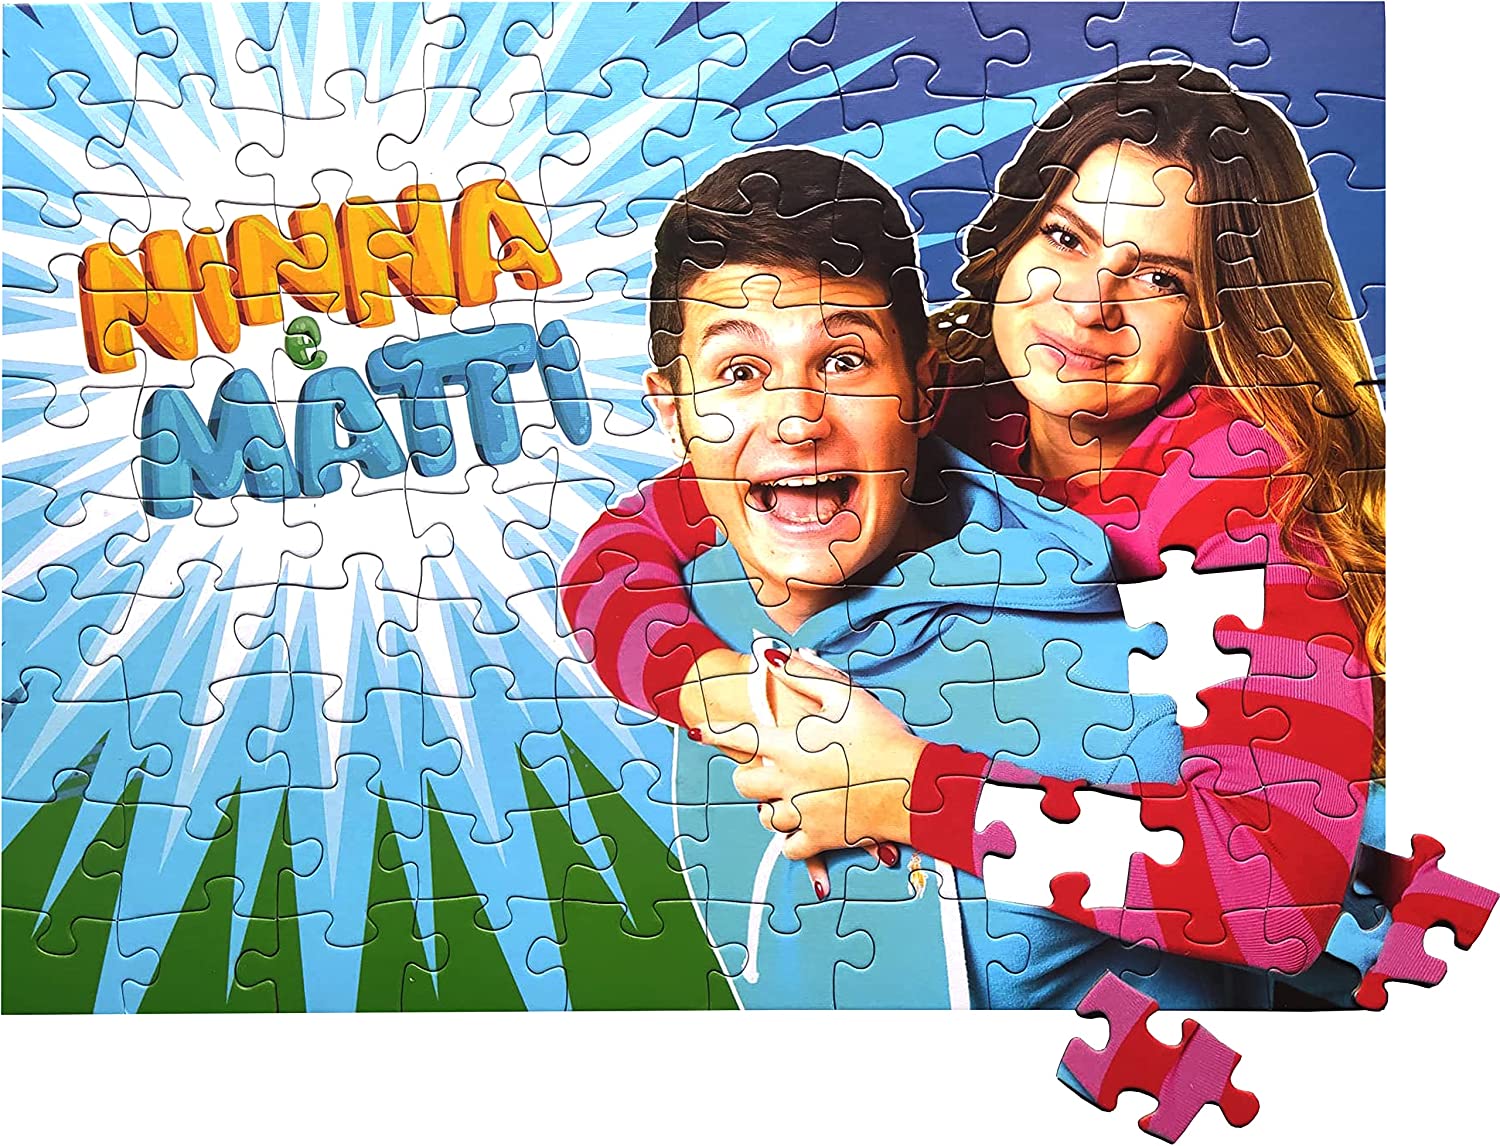 Ninna e Matti - Ninna e Matti added a new photo.